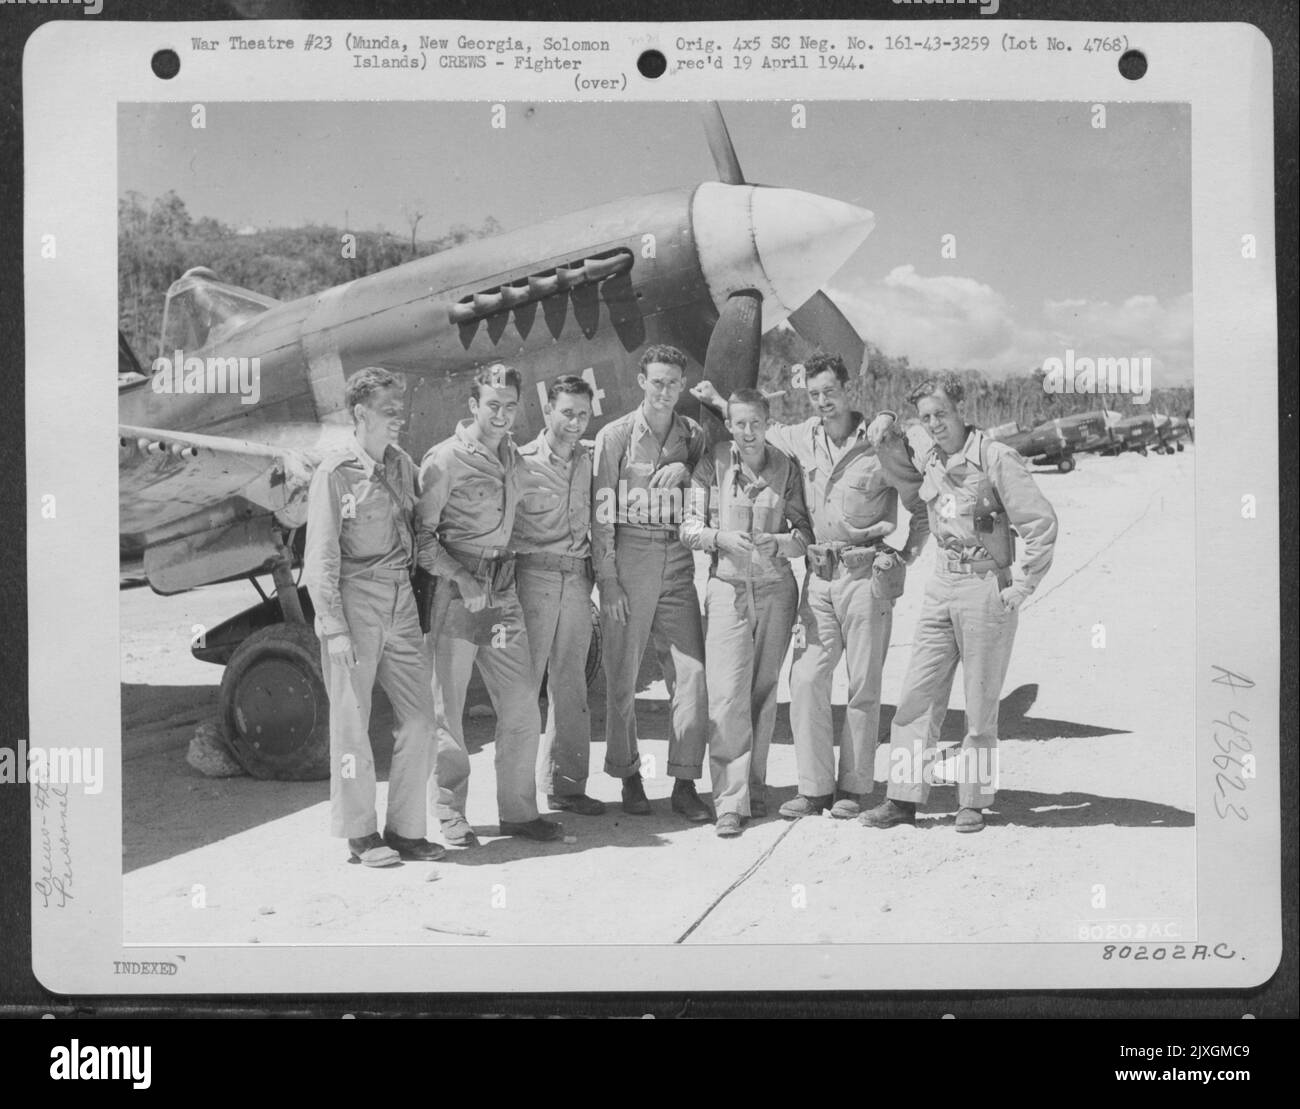 Eine Gruppe von Piloten aus dem ersten Curtiss P-40s bis zur Landung auf Munda, New Georgia Island, Salomonen, posieren vor einem der Flugzeuge. Sie sind, von links nach rechts: LT. K.M. Nzus; LT. R. M. Magown; LT. R. B. Walker; Capt. T.B. Jennings; LT. F.C. Crain; Capt Stockfoto